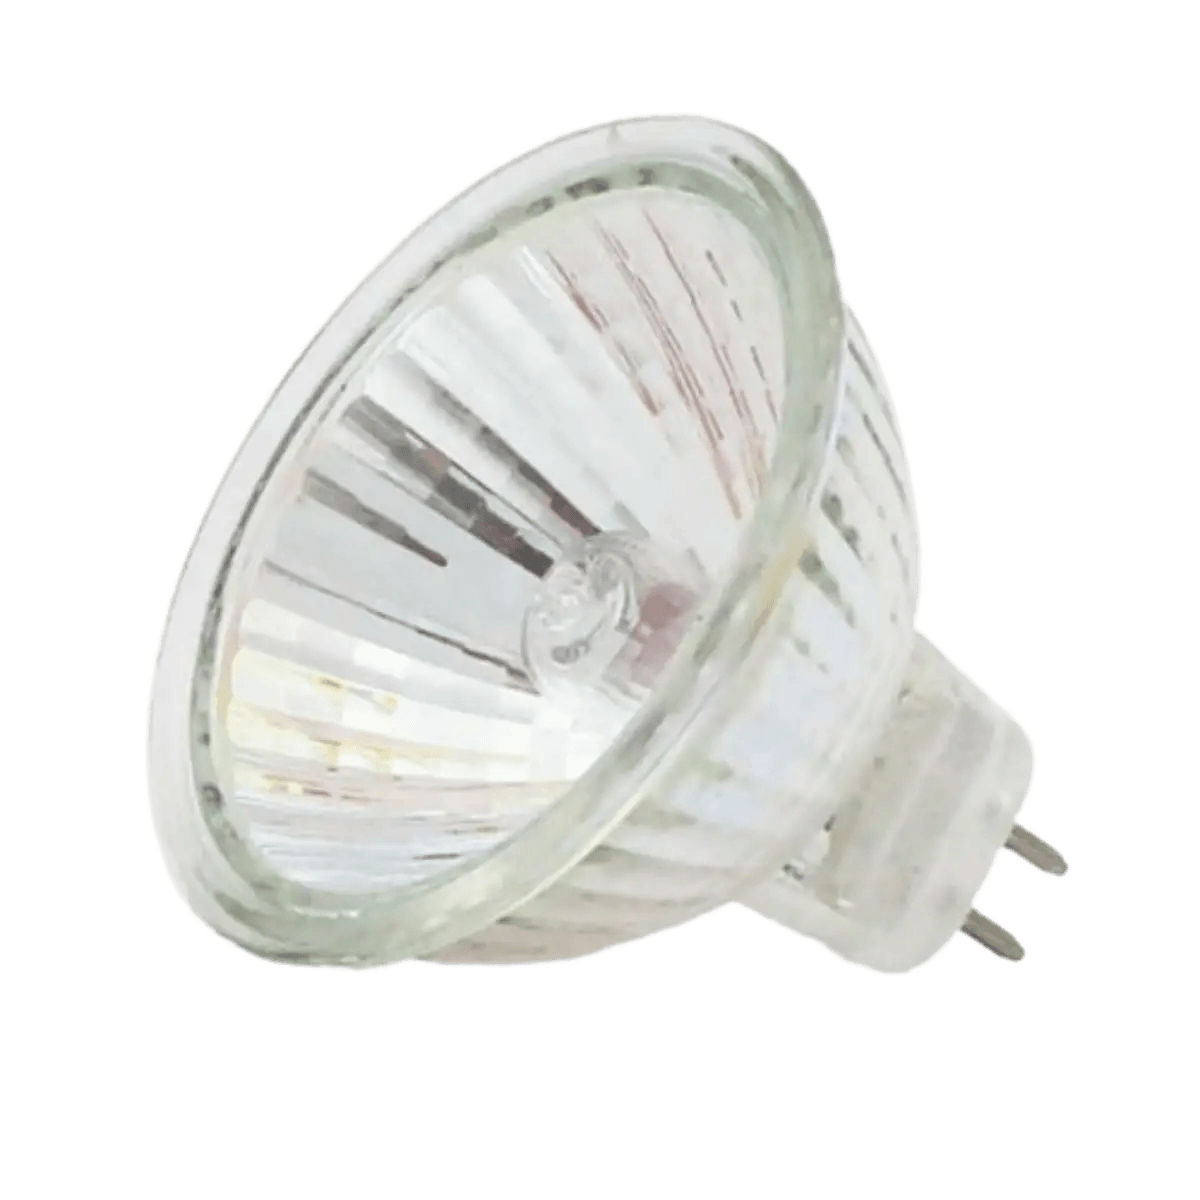 Ampoule 100W Gy6.35 - Lampe capsule halogène 12V